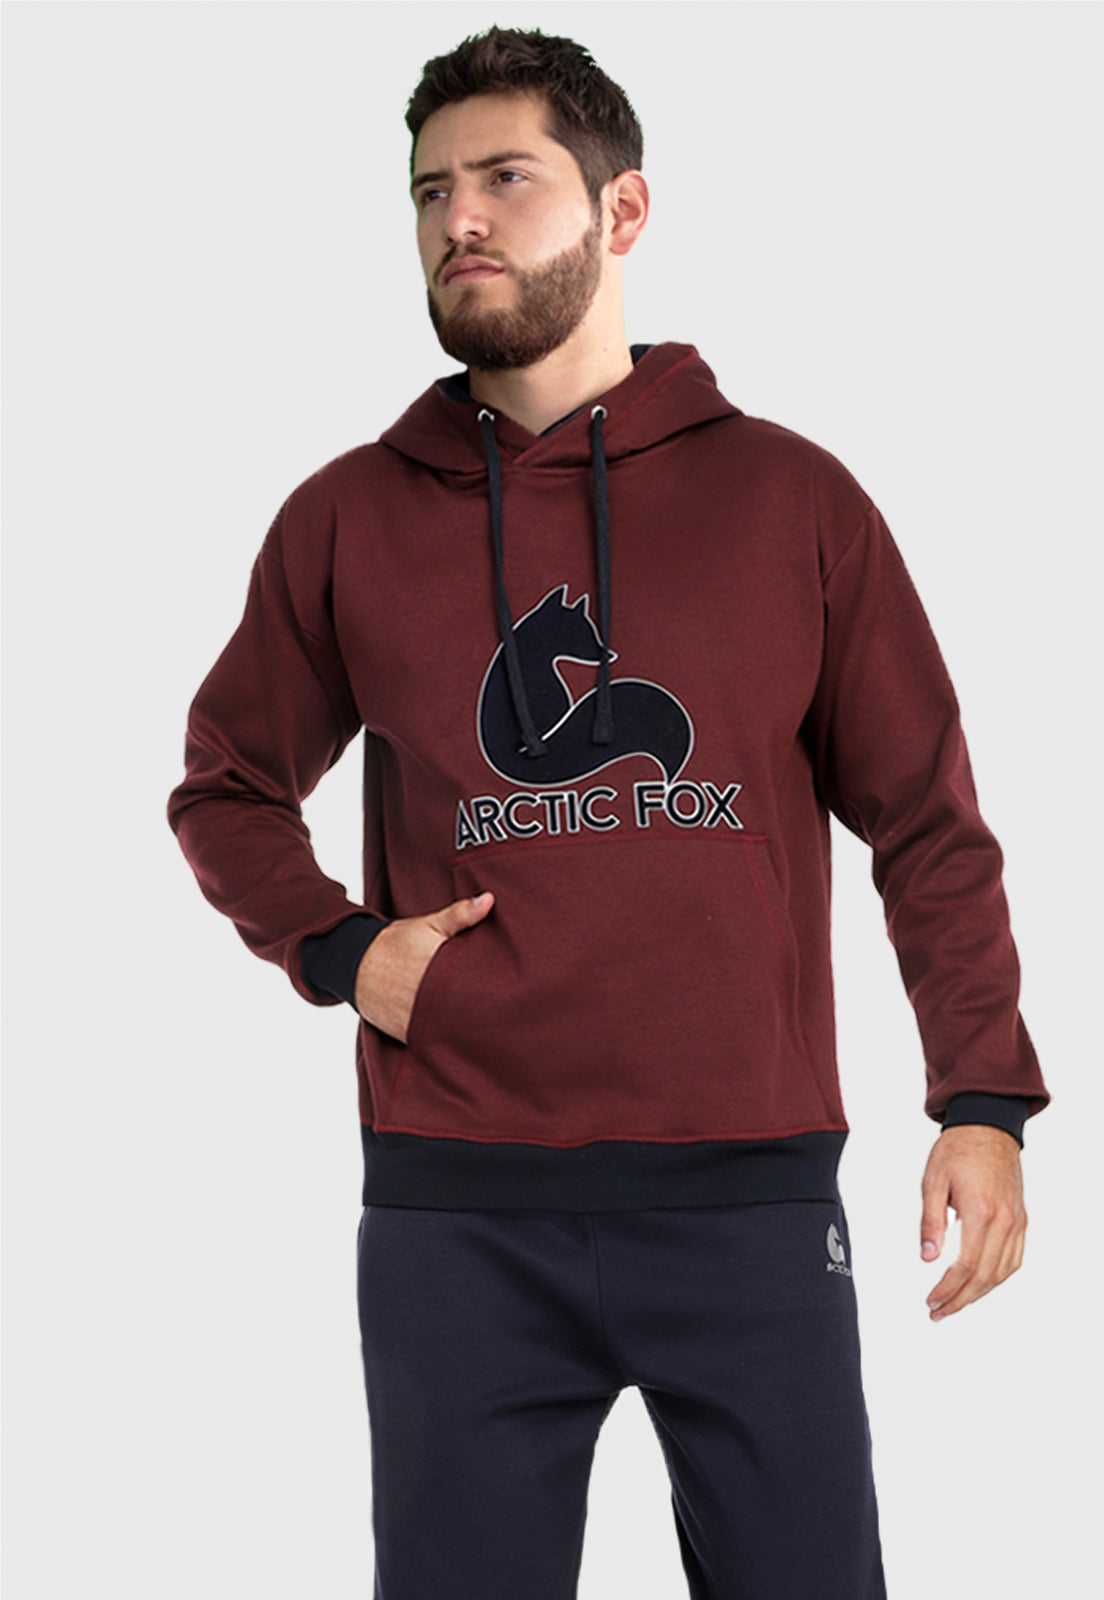 Hombre vistiendo el buzo hoodie vinotinto para hombre Arctic Fox con capota forrada azul.